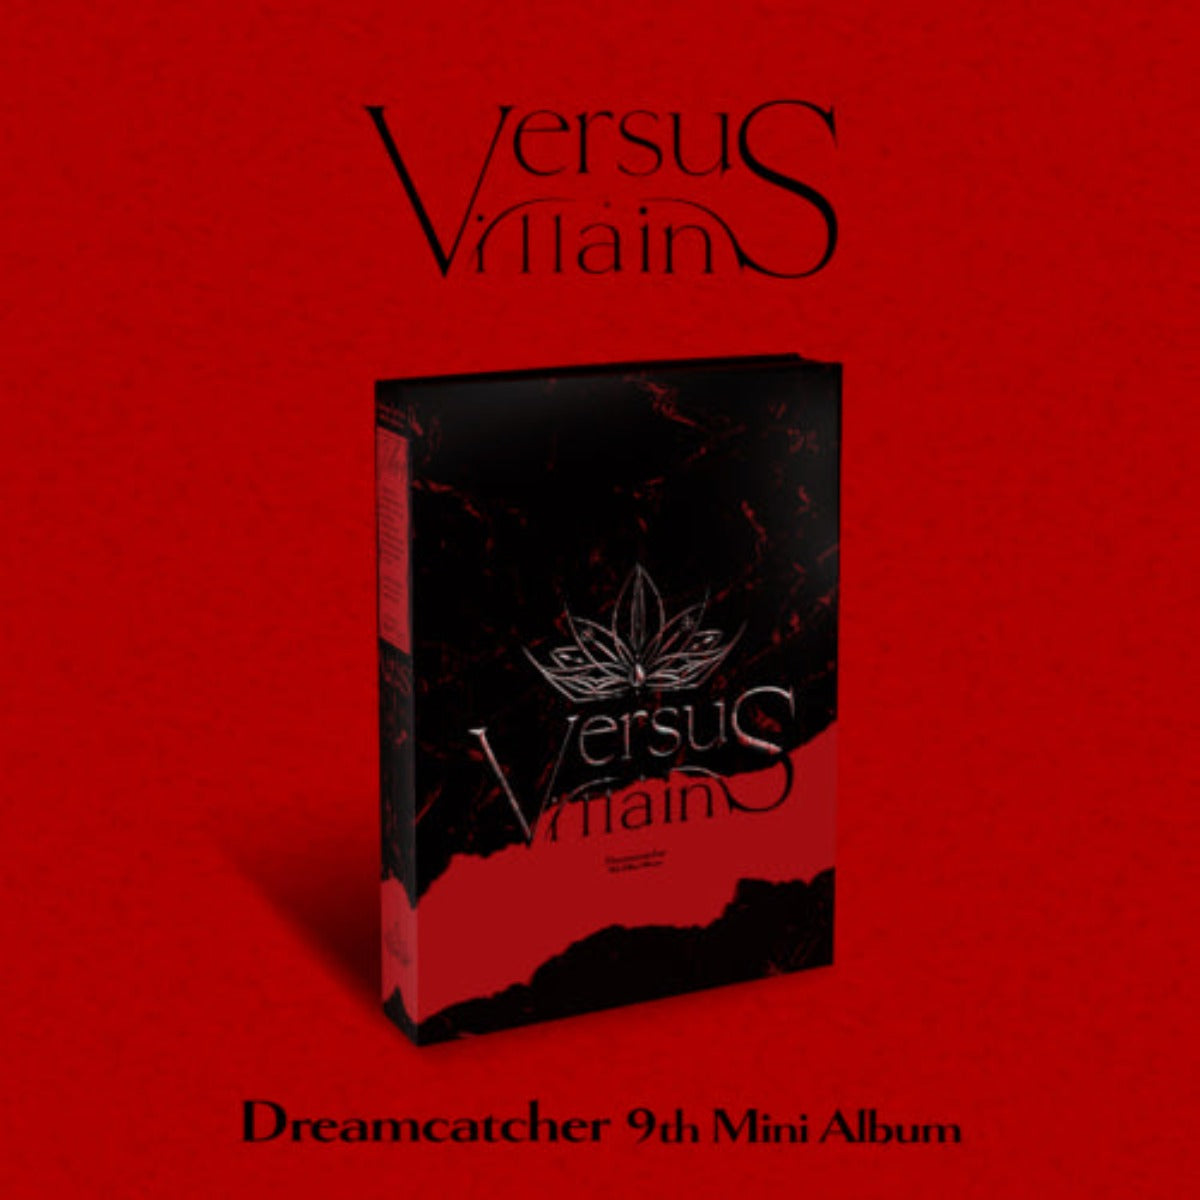 Dreamcatcher Mini Album Vol. 9 - VillainS (C Version) (Limited Edition)